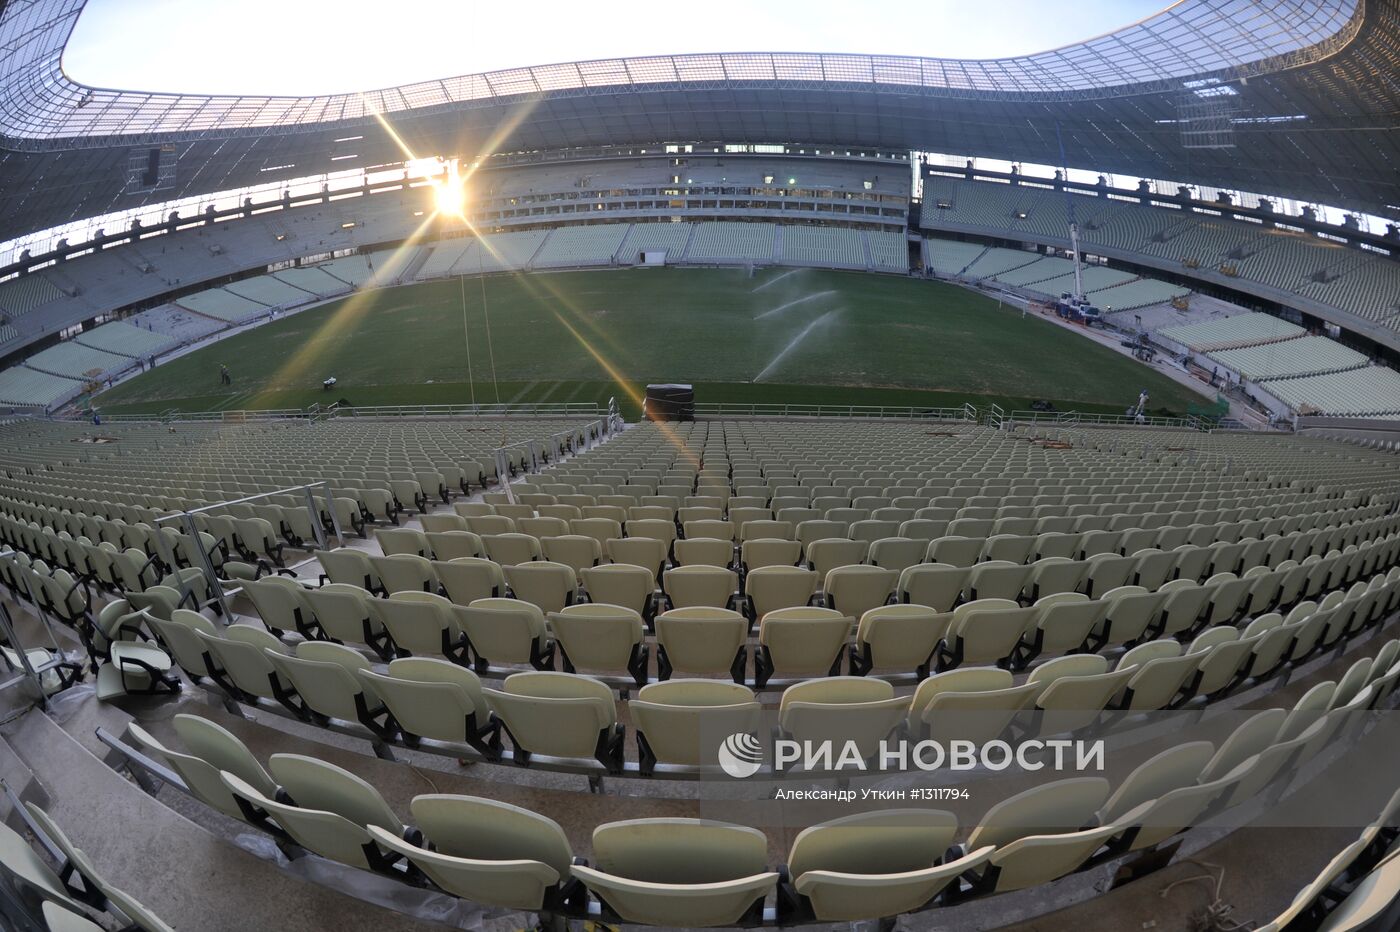 Строительство стадиона "Кастелан" в Бразилии